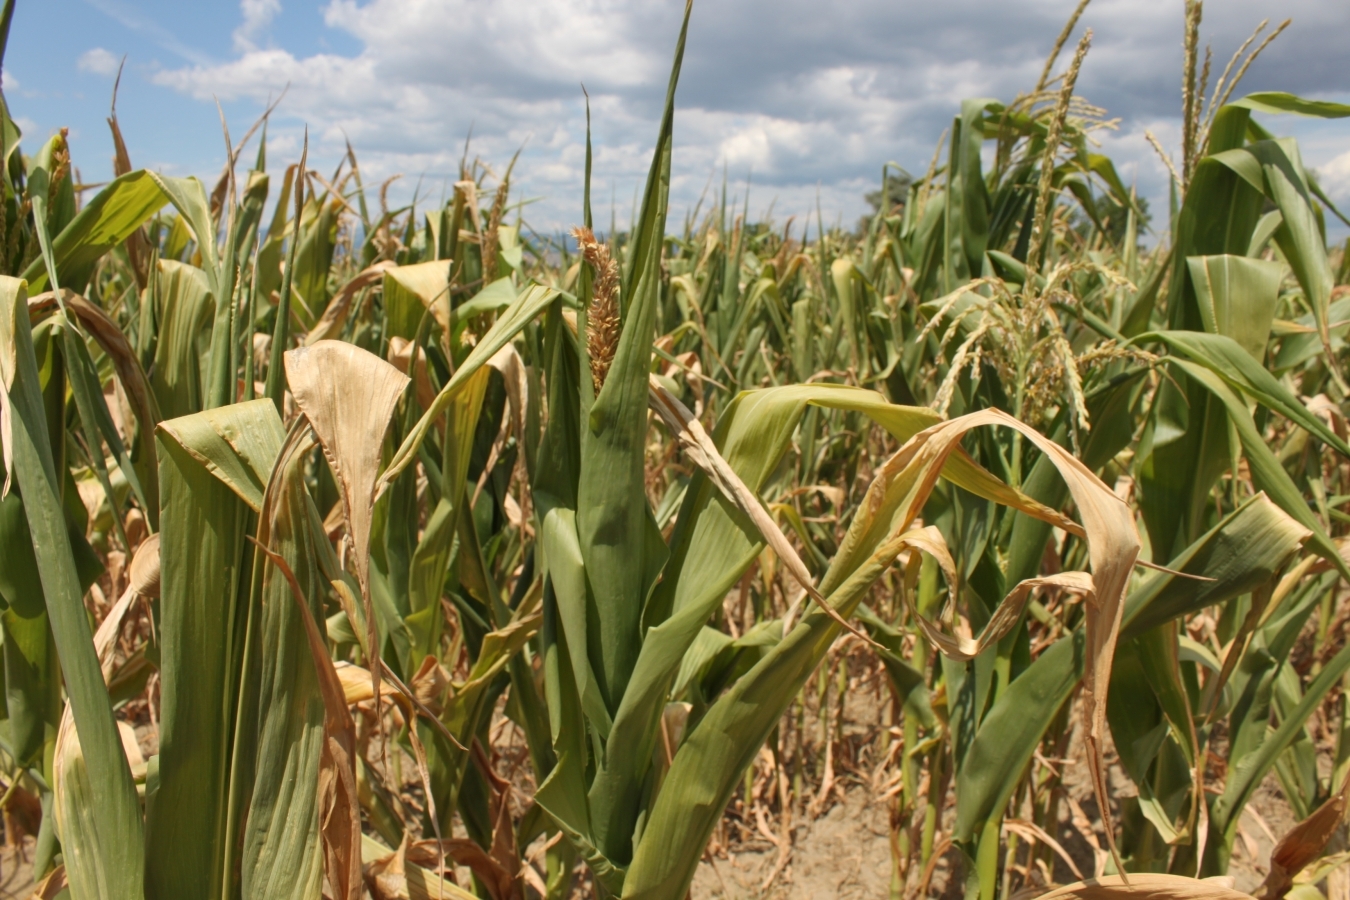 Ministrul Agriculturii a anunţat că peste 200.000 de hectare de porumb şi floarea soarelui sunt afectate din cauza secetei